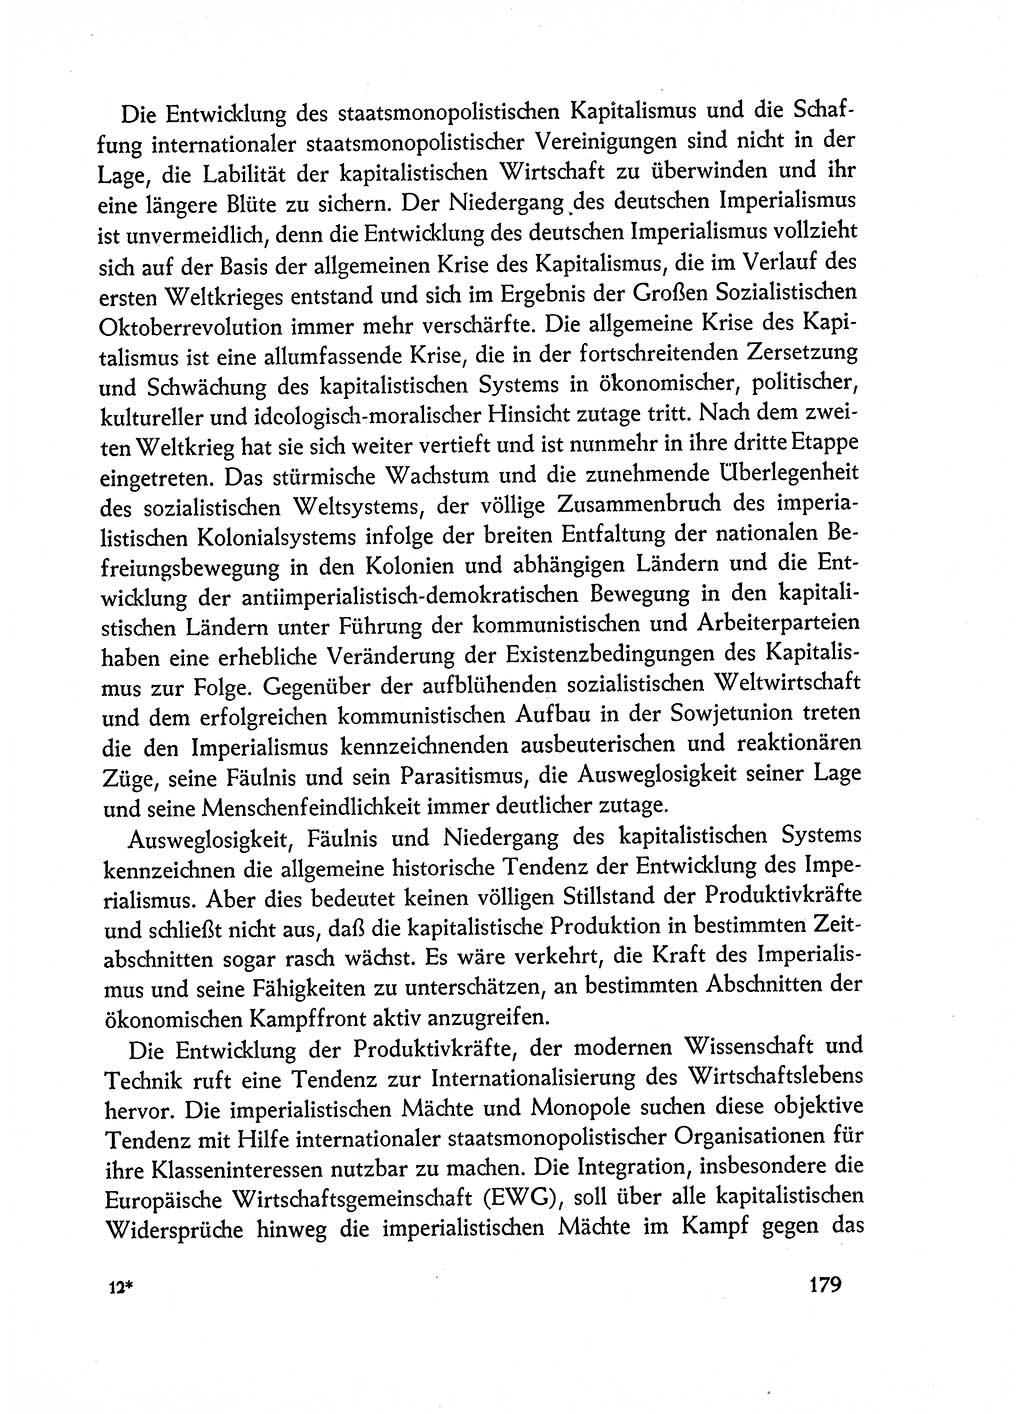 Dokumente der Sozialistischen Einheitspartei Deutschlands (SED) [Deutsche Demokratische Republik (DDR)] 1962-1963, Seite 179 (Dok. SED DDR 1962-1963, S. 179)